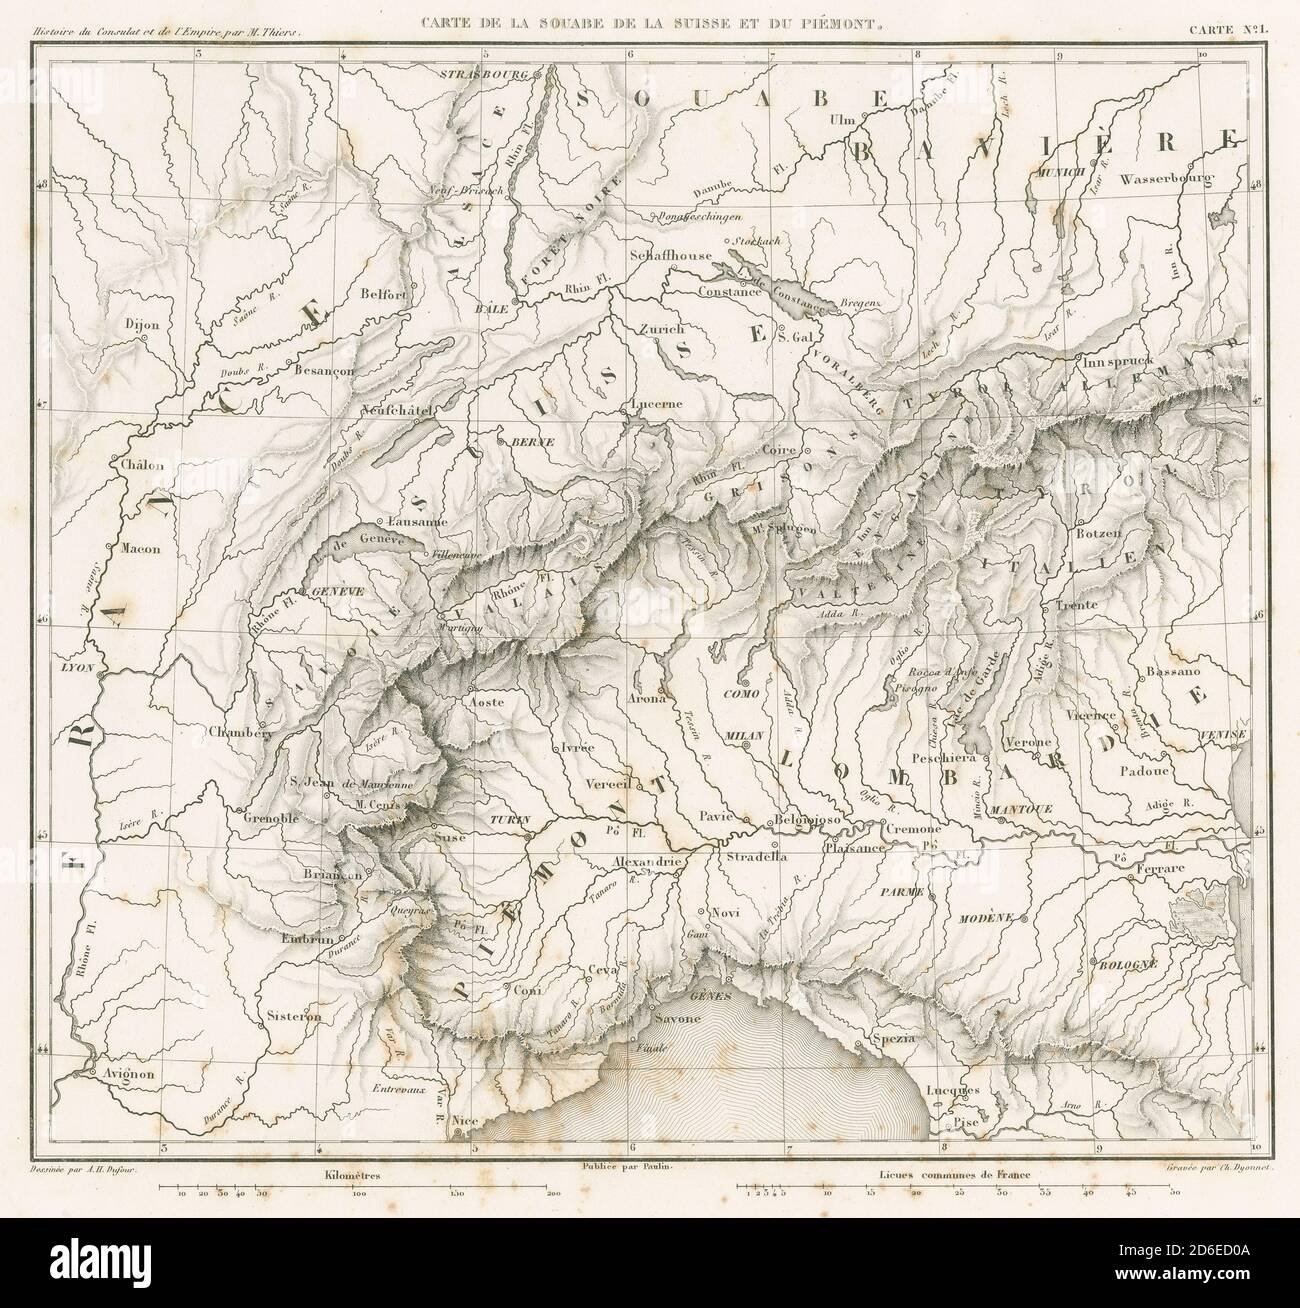 Antike französische Kupferstich-Landkarte von 1859, Carte de la Souabe de la Suisse et du Piémont, zeigt die Alpen und Länder Frankreichs, Deutschlands, Italiens und der Schweiz. QUELLE: ORIGINALGRAVUR Stockfoto